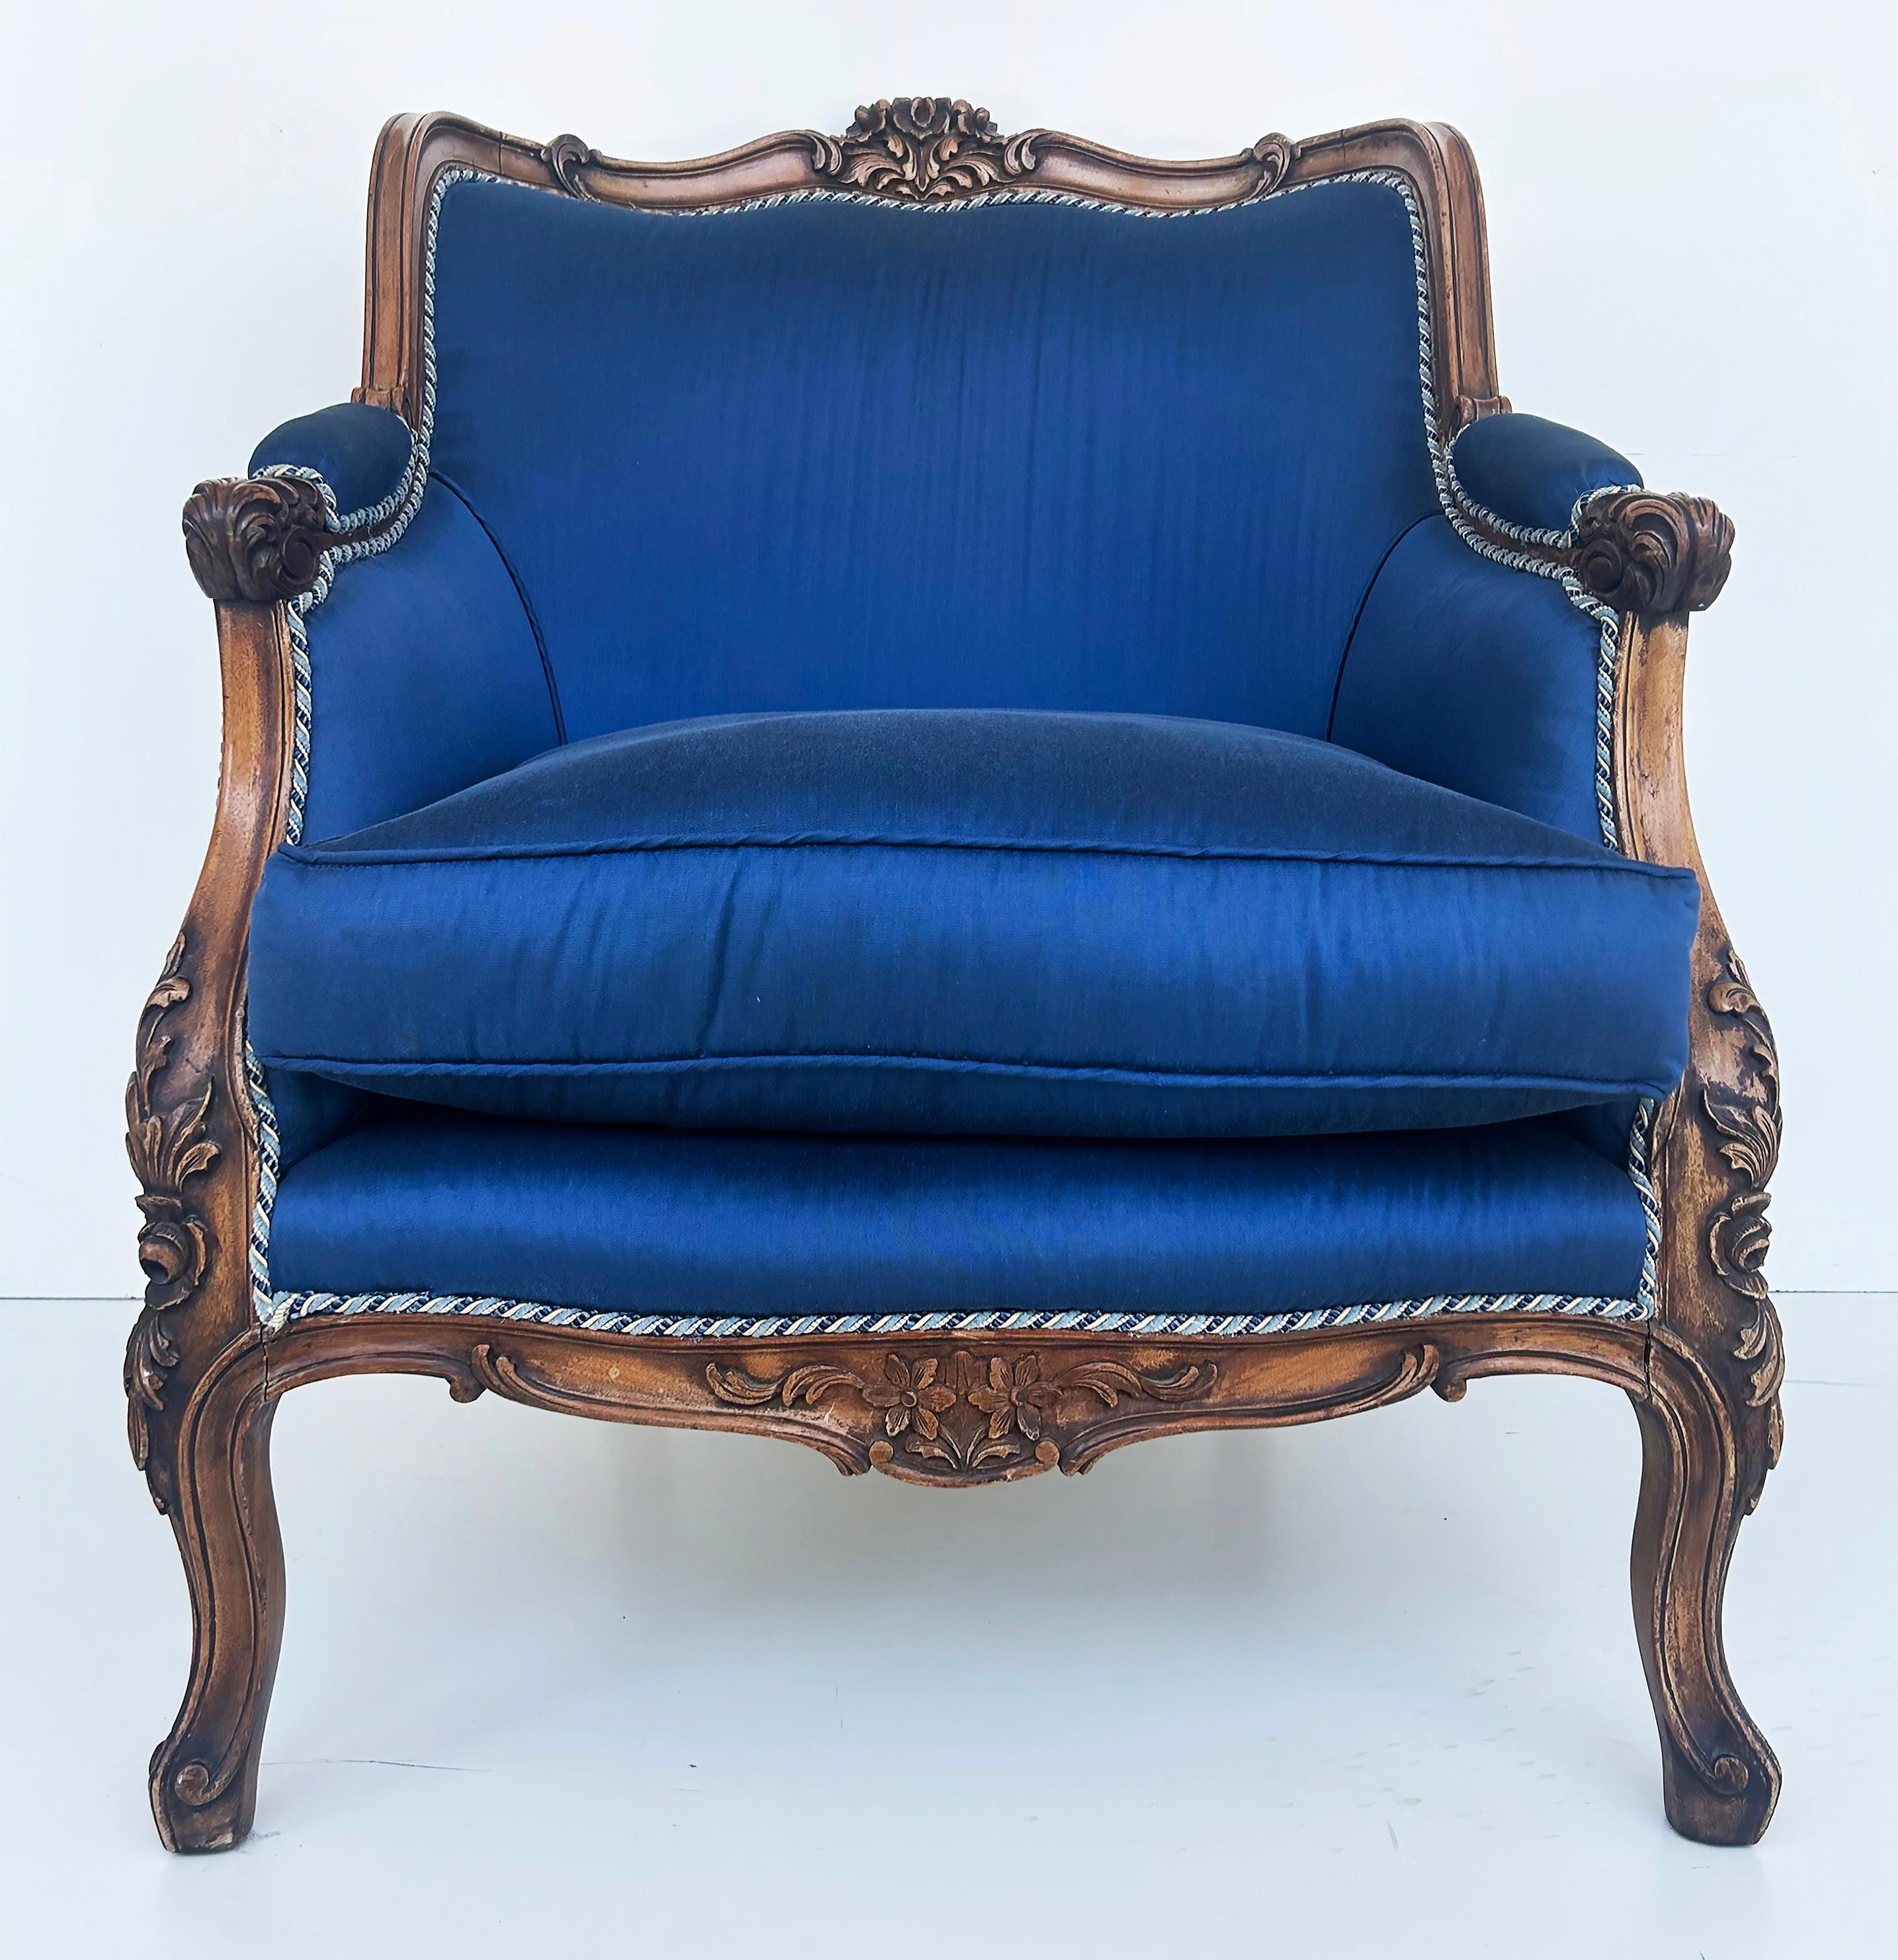 Paire de fauteuils Bergeres français des années 1920 en noyer sculpté et tapissés de soie 

La vente porte sur une paire de  Fauteuils club en noyer bergère sculptés à la main et magnifiquement tapissés de soie bleue avec des bordures contrastées. 